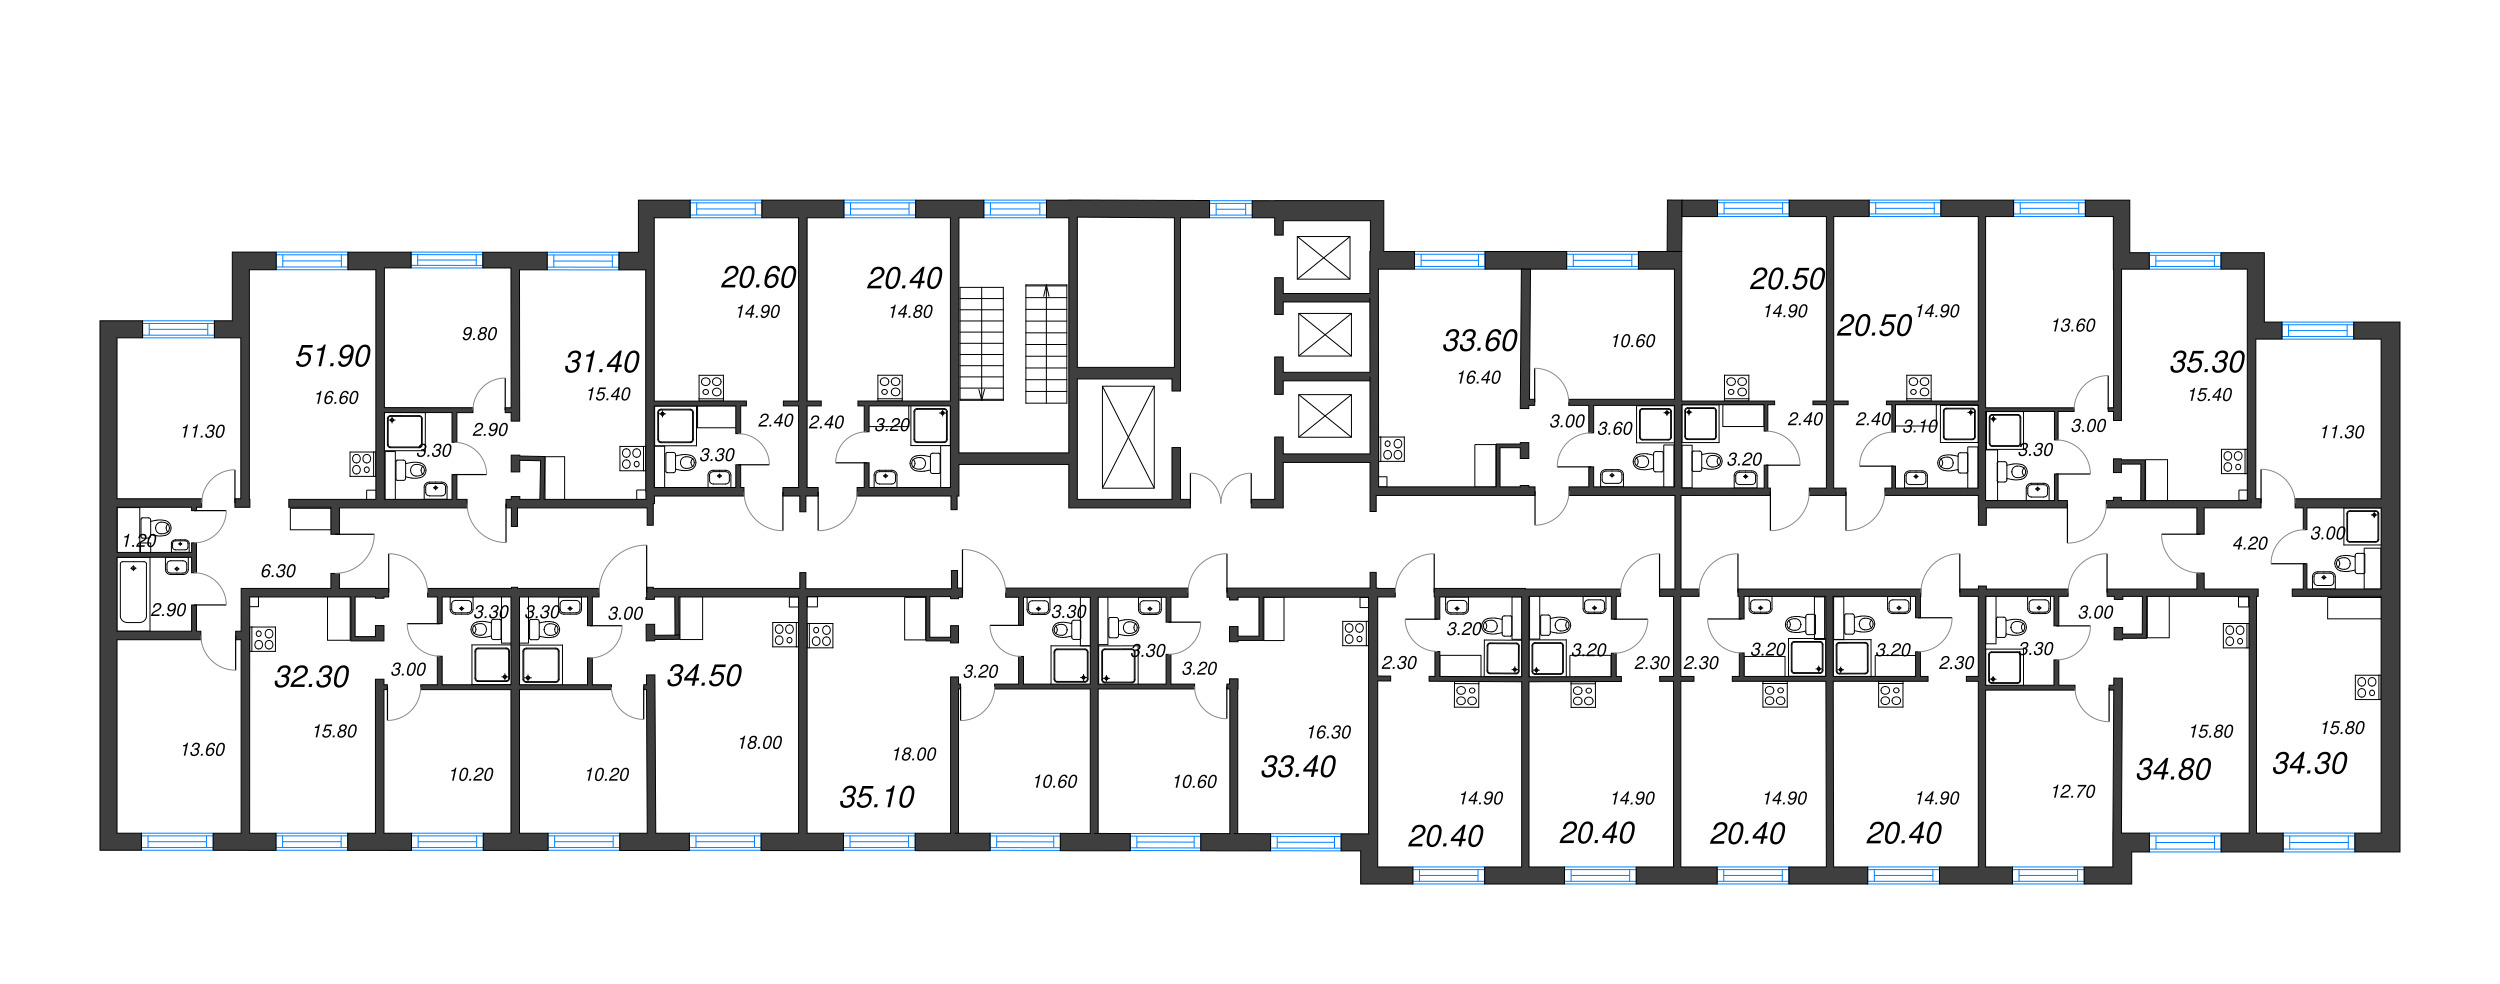 2-комнатная (Евро) квартира, 31.4 м² в ЖК "Цветной город" - планировка этажа